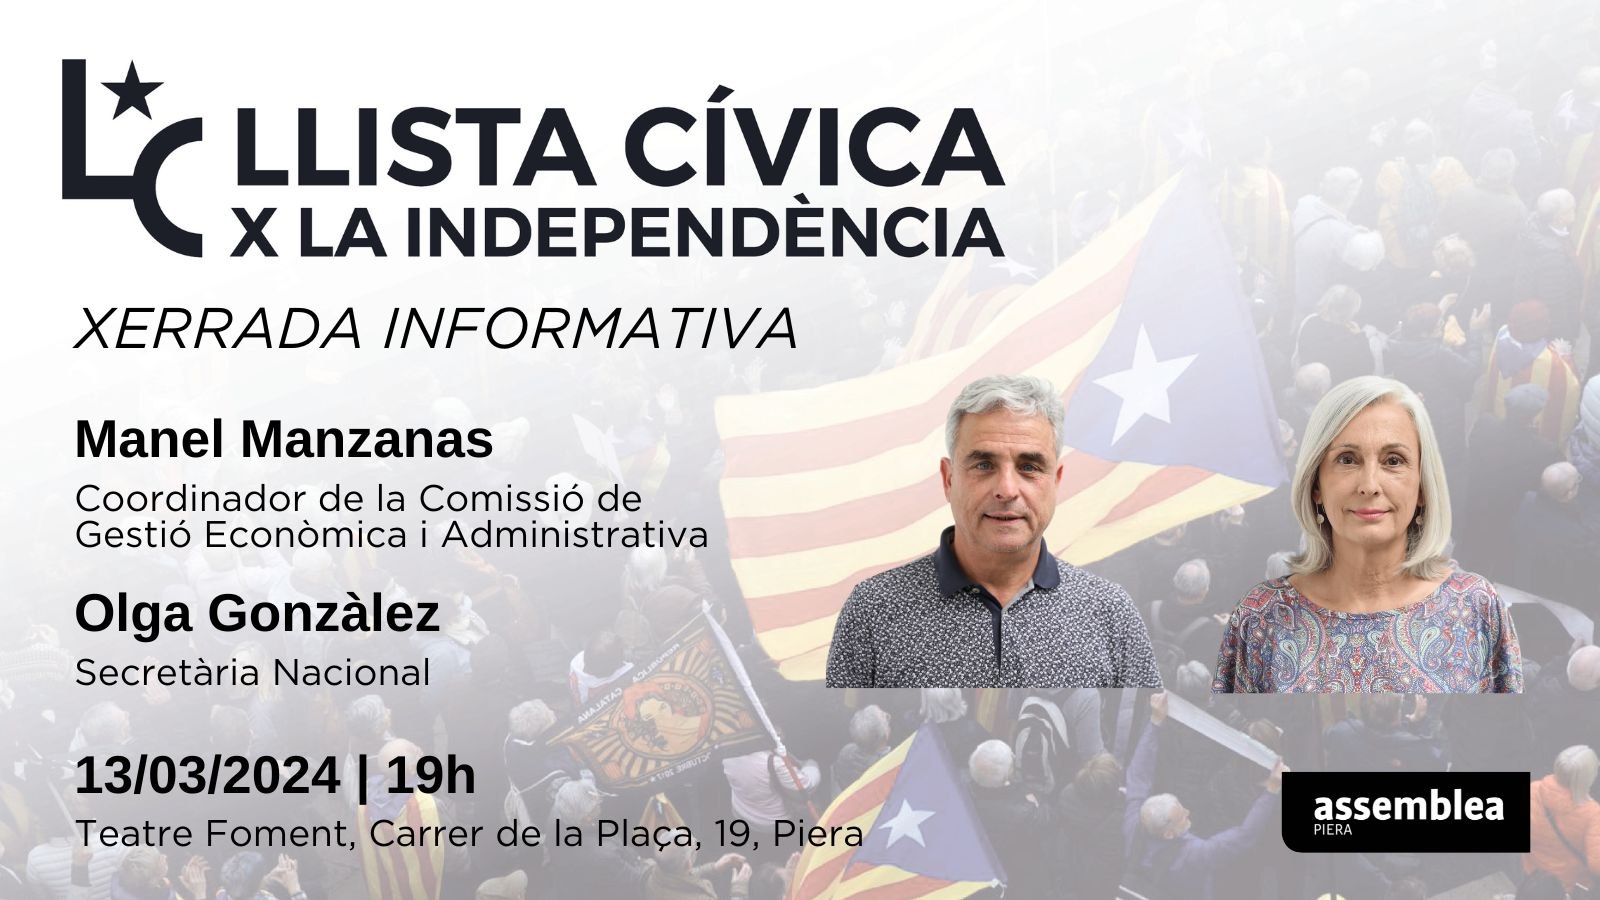 Piera | Xerrada informativa sobre la Llista Cívica per la Independència